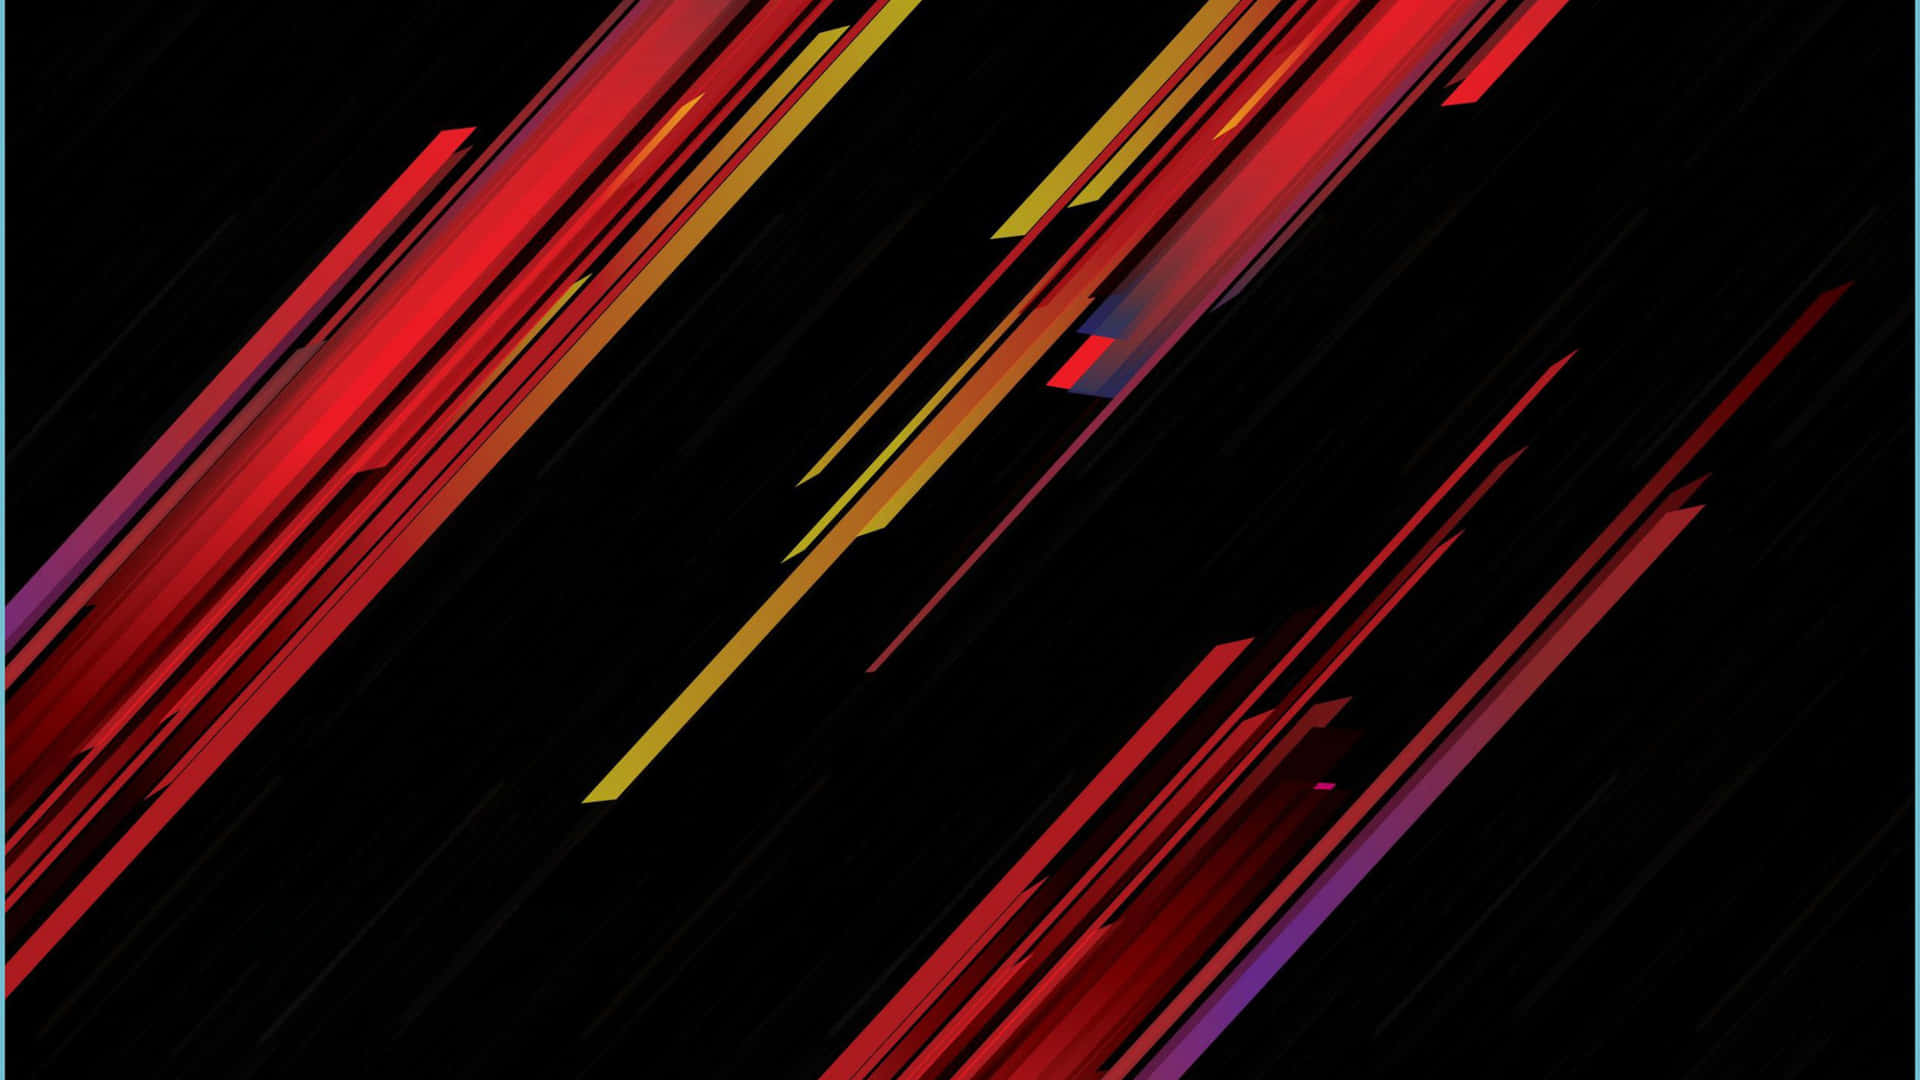 Einschwarzer Hintergrund Mit Roten, Gelben Und Blauen Linien. Wallpaper